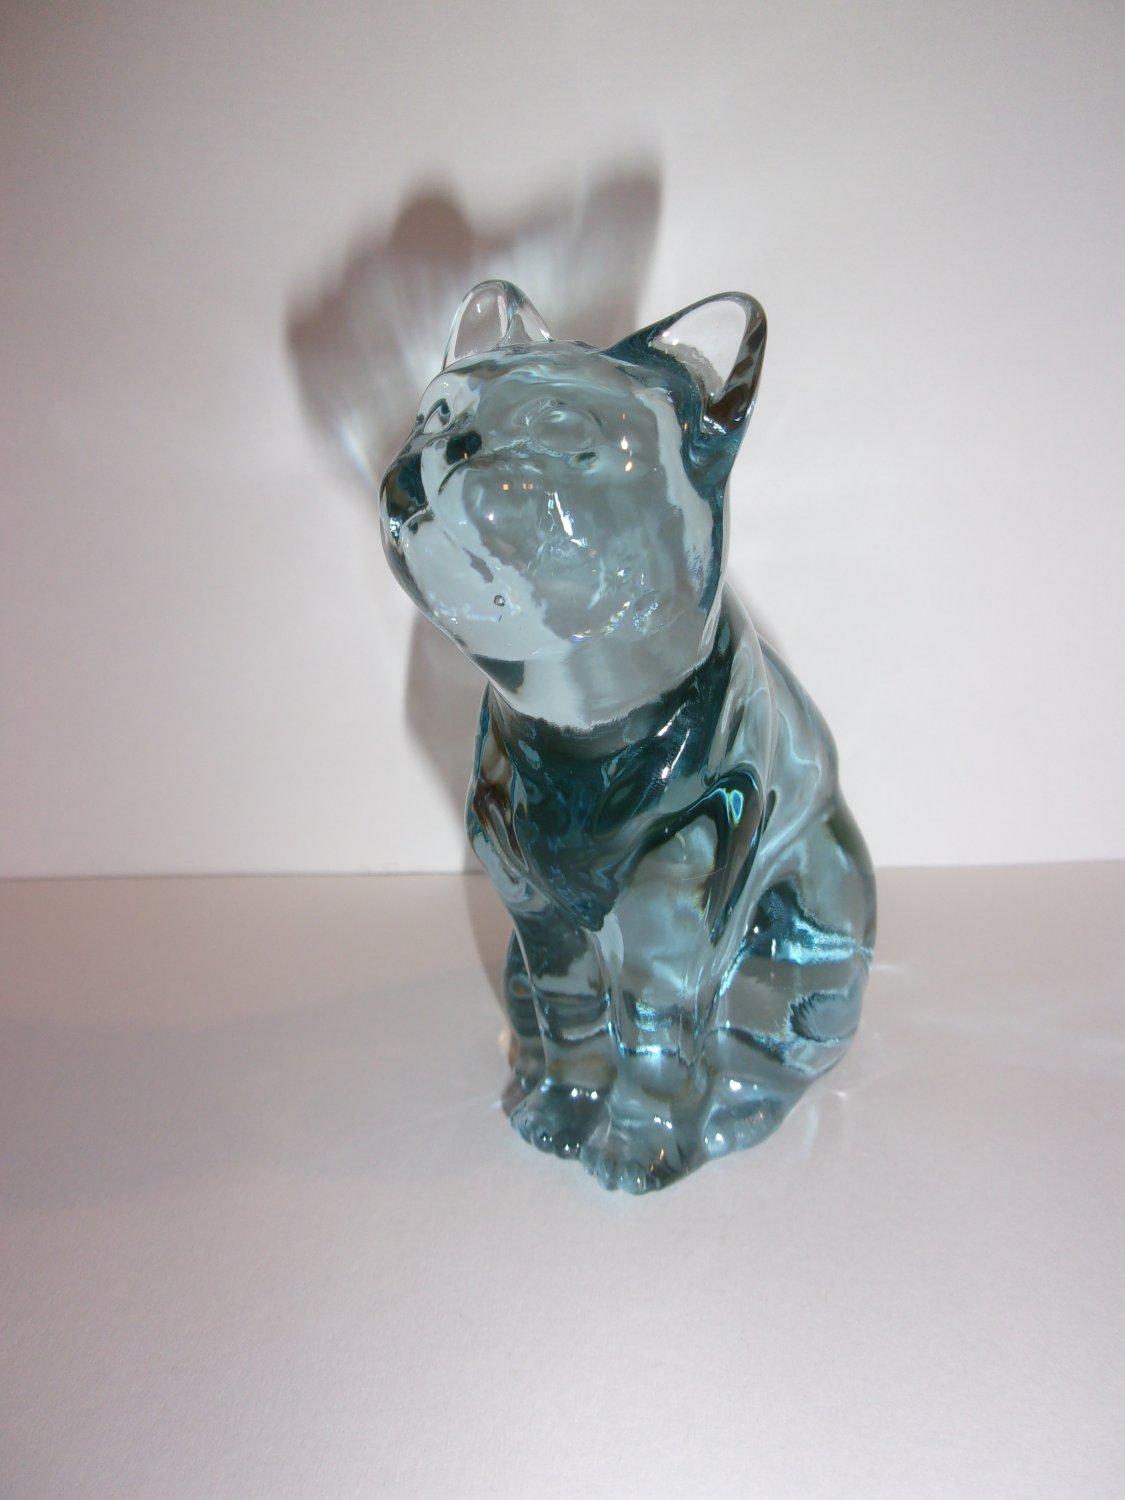 Fenton Art Glass Salem Blue Curious Cat Kitten Figurine 1990's